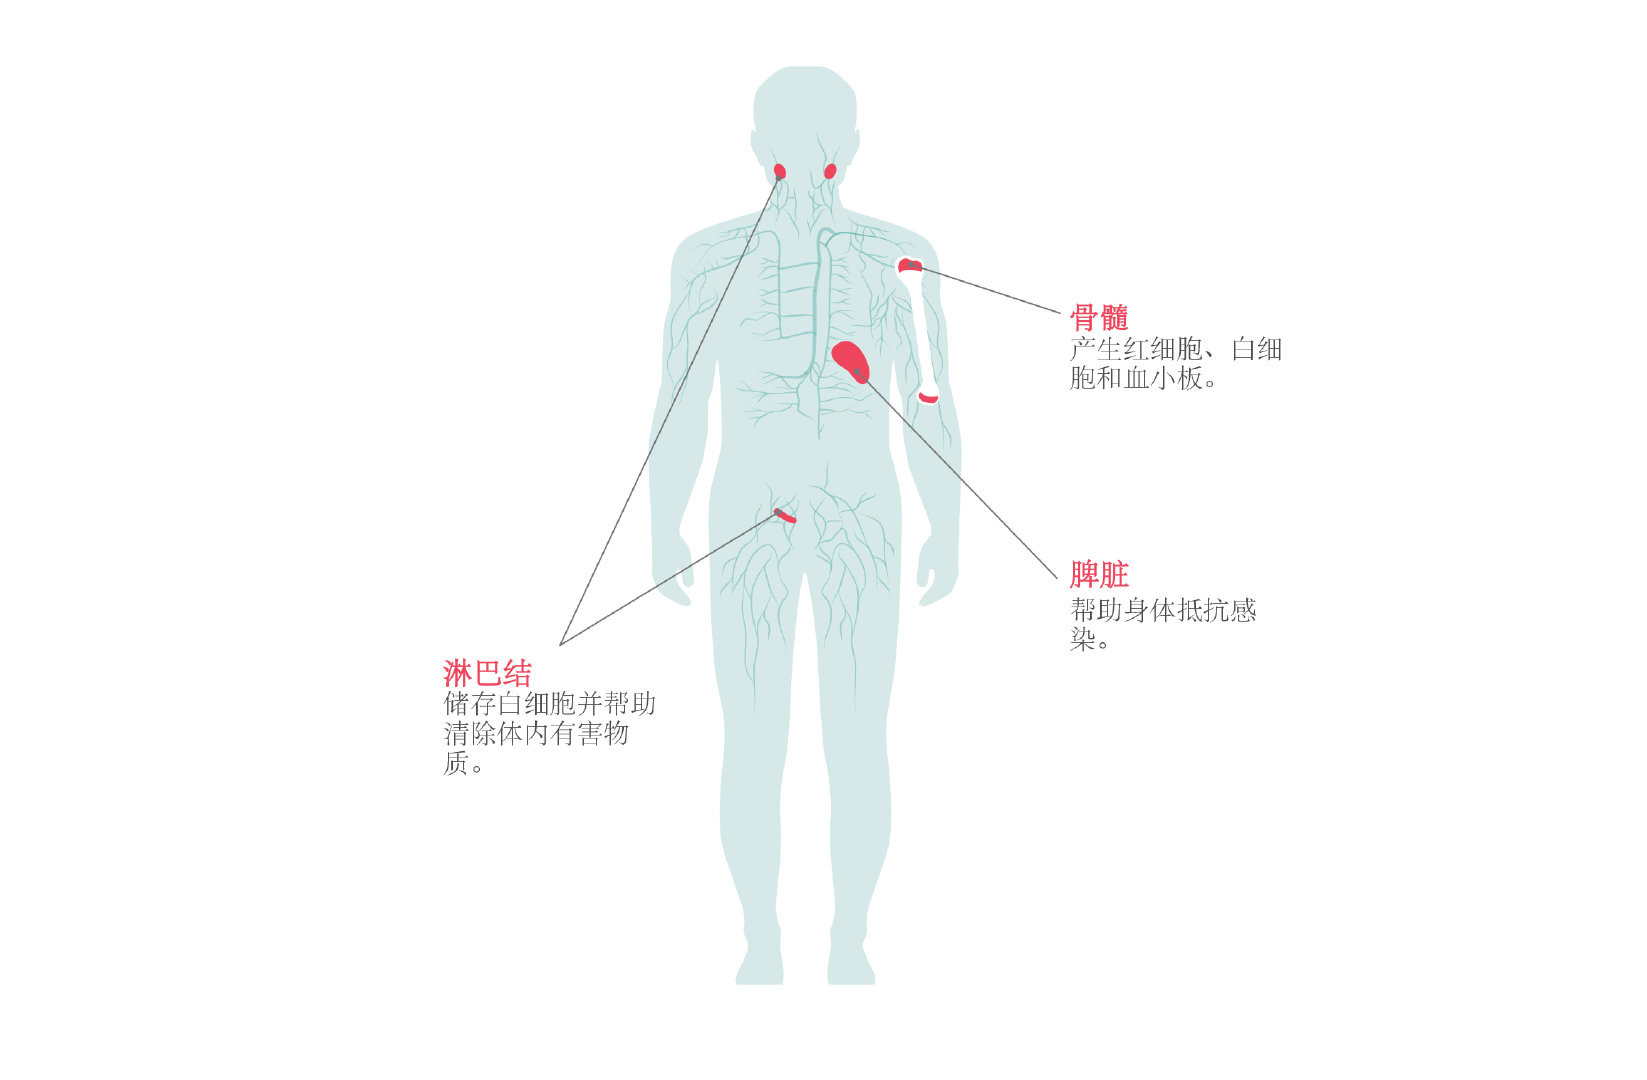 3线或以上滤泡性淋巴瘤双特异性抗体Lunsumio患者手册_香港济民药业